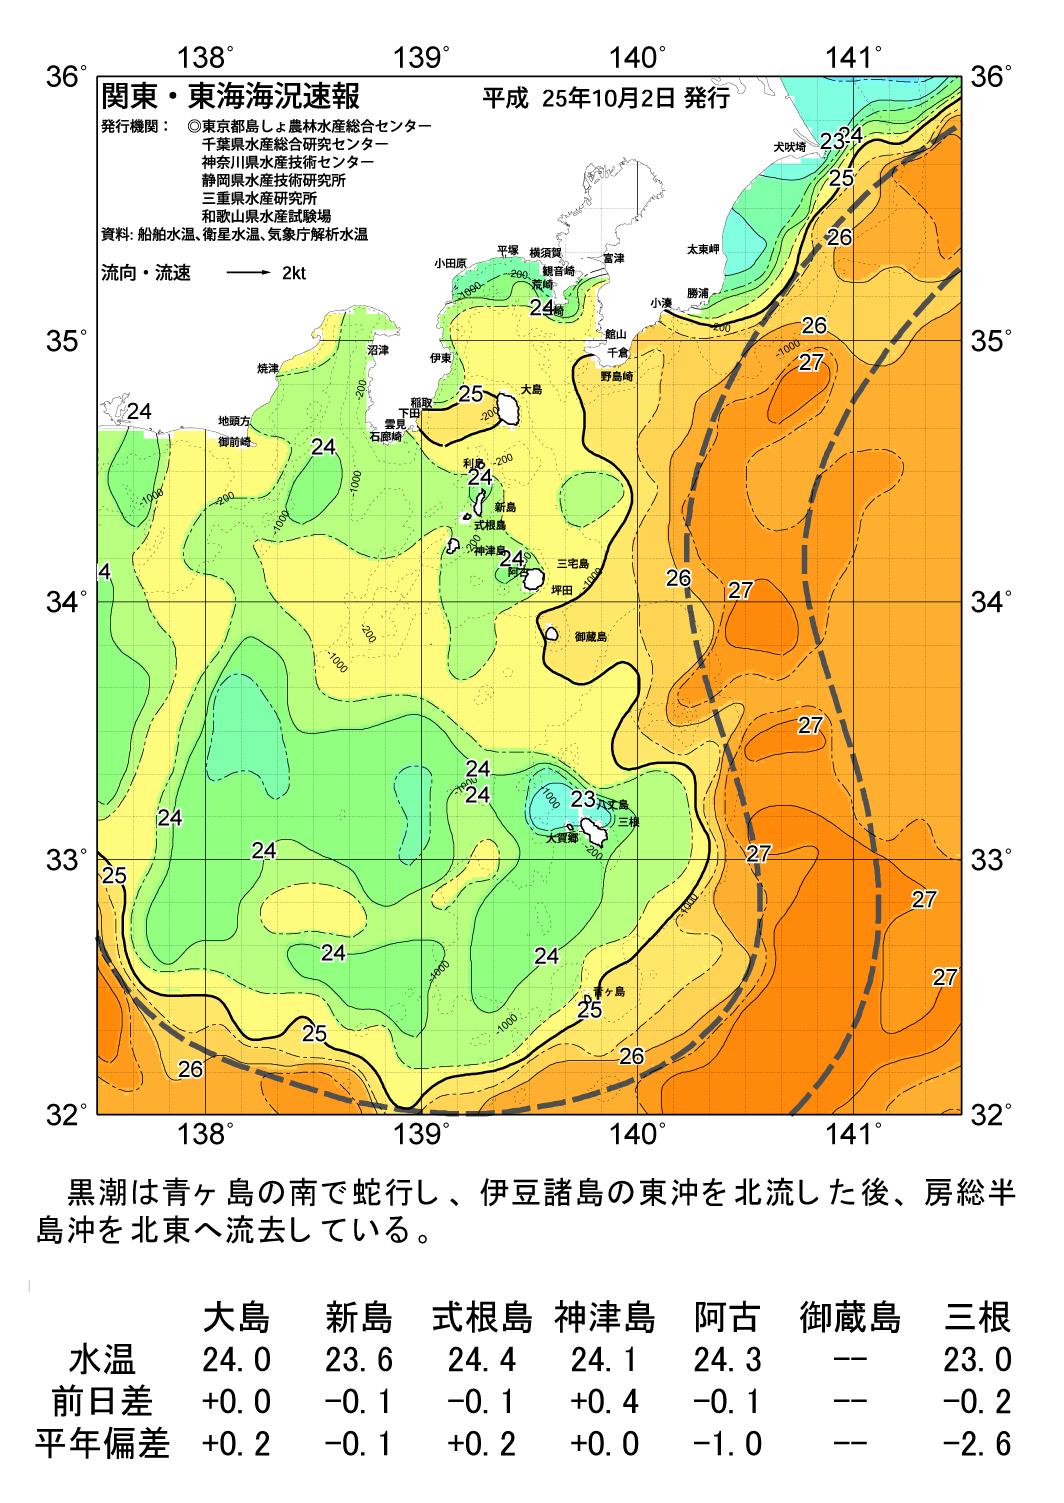 海の天気図13年10月2日 東京都島しょ農林水産総合センター